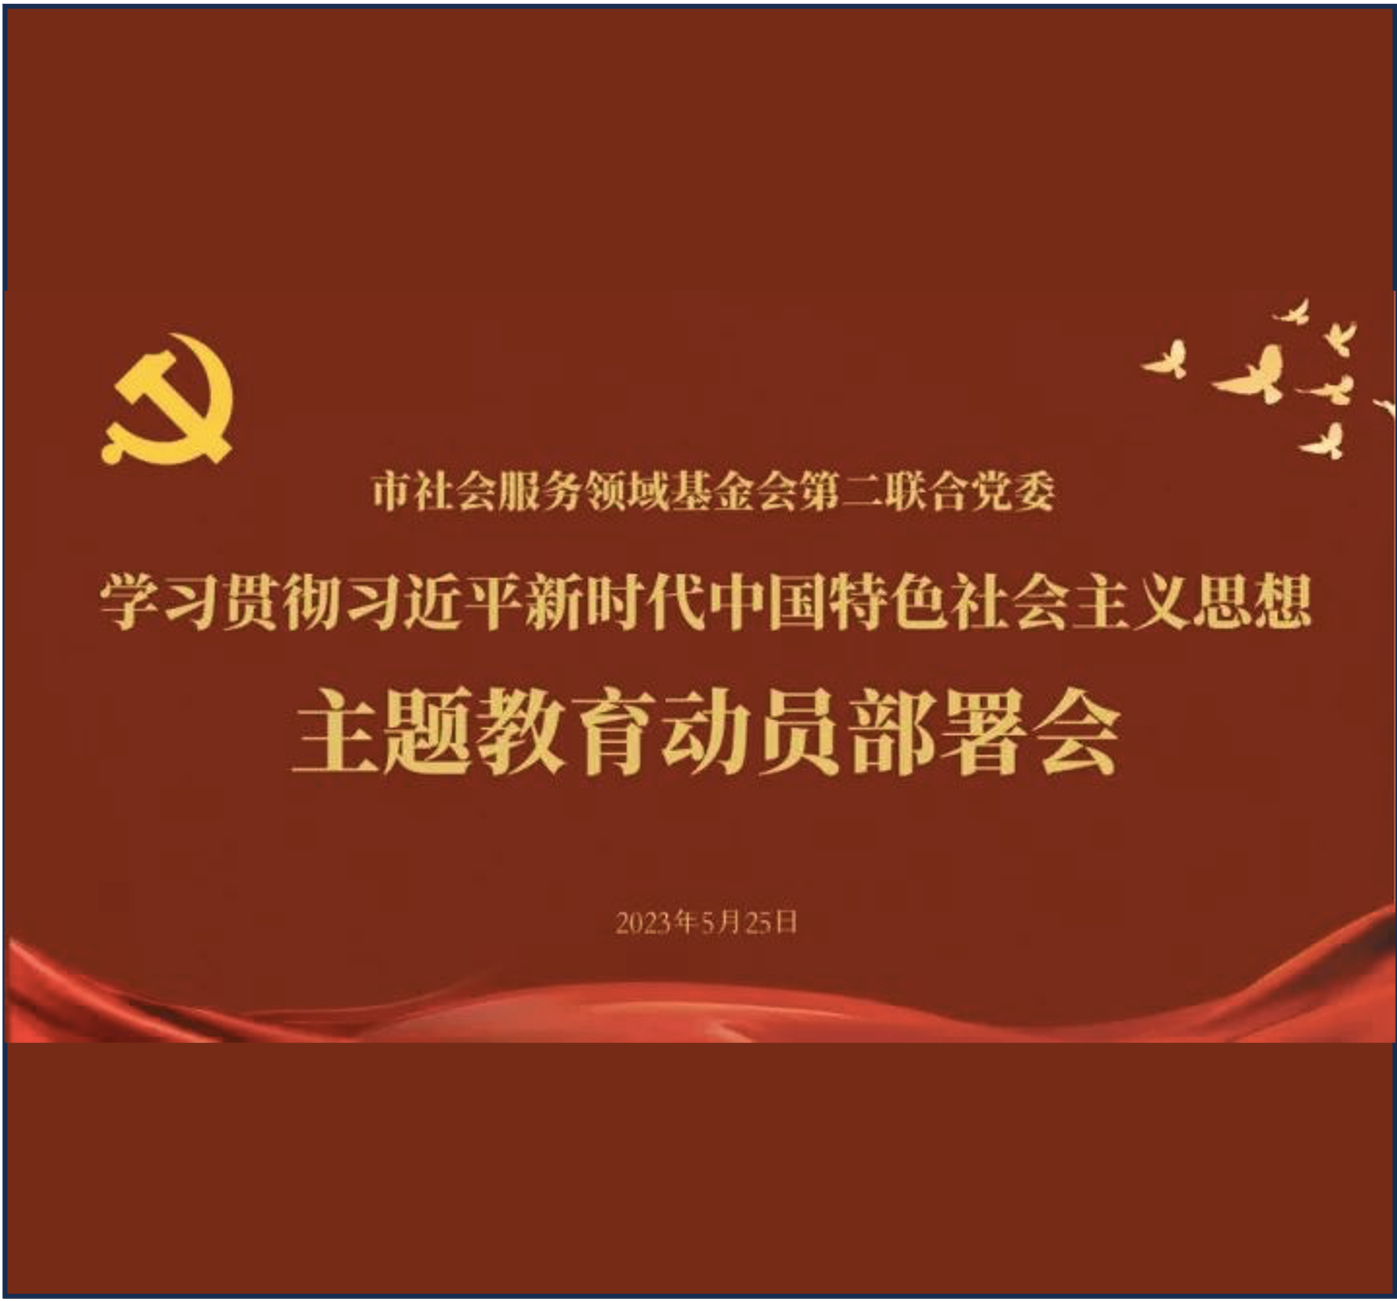 党建活动-学习贯彻习近平新时代中国特色社会主义思想主题教育动员部署会